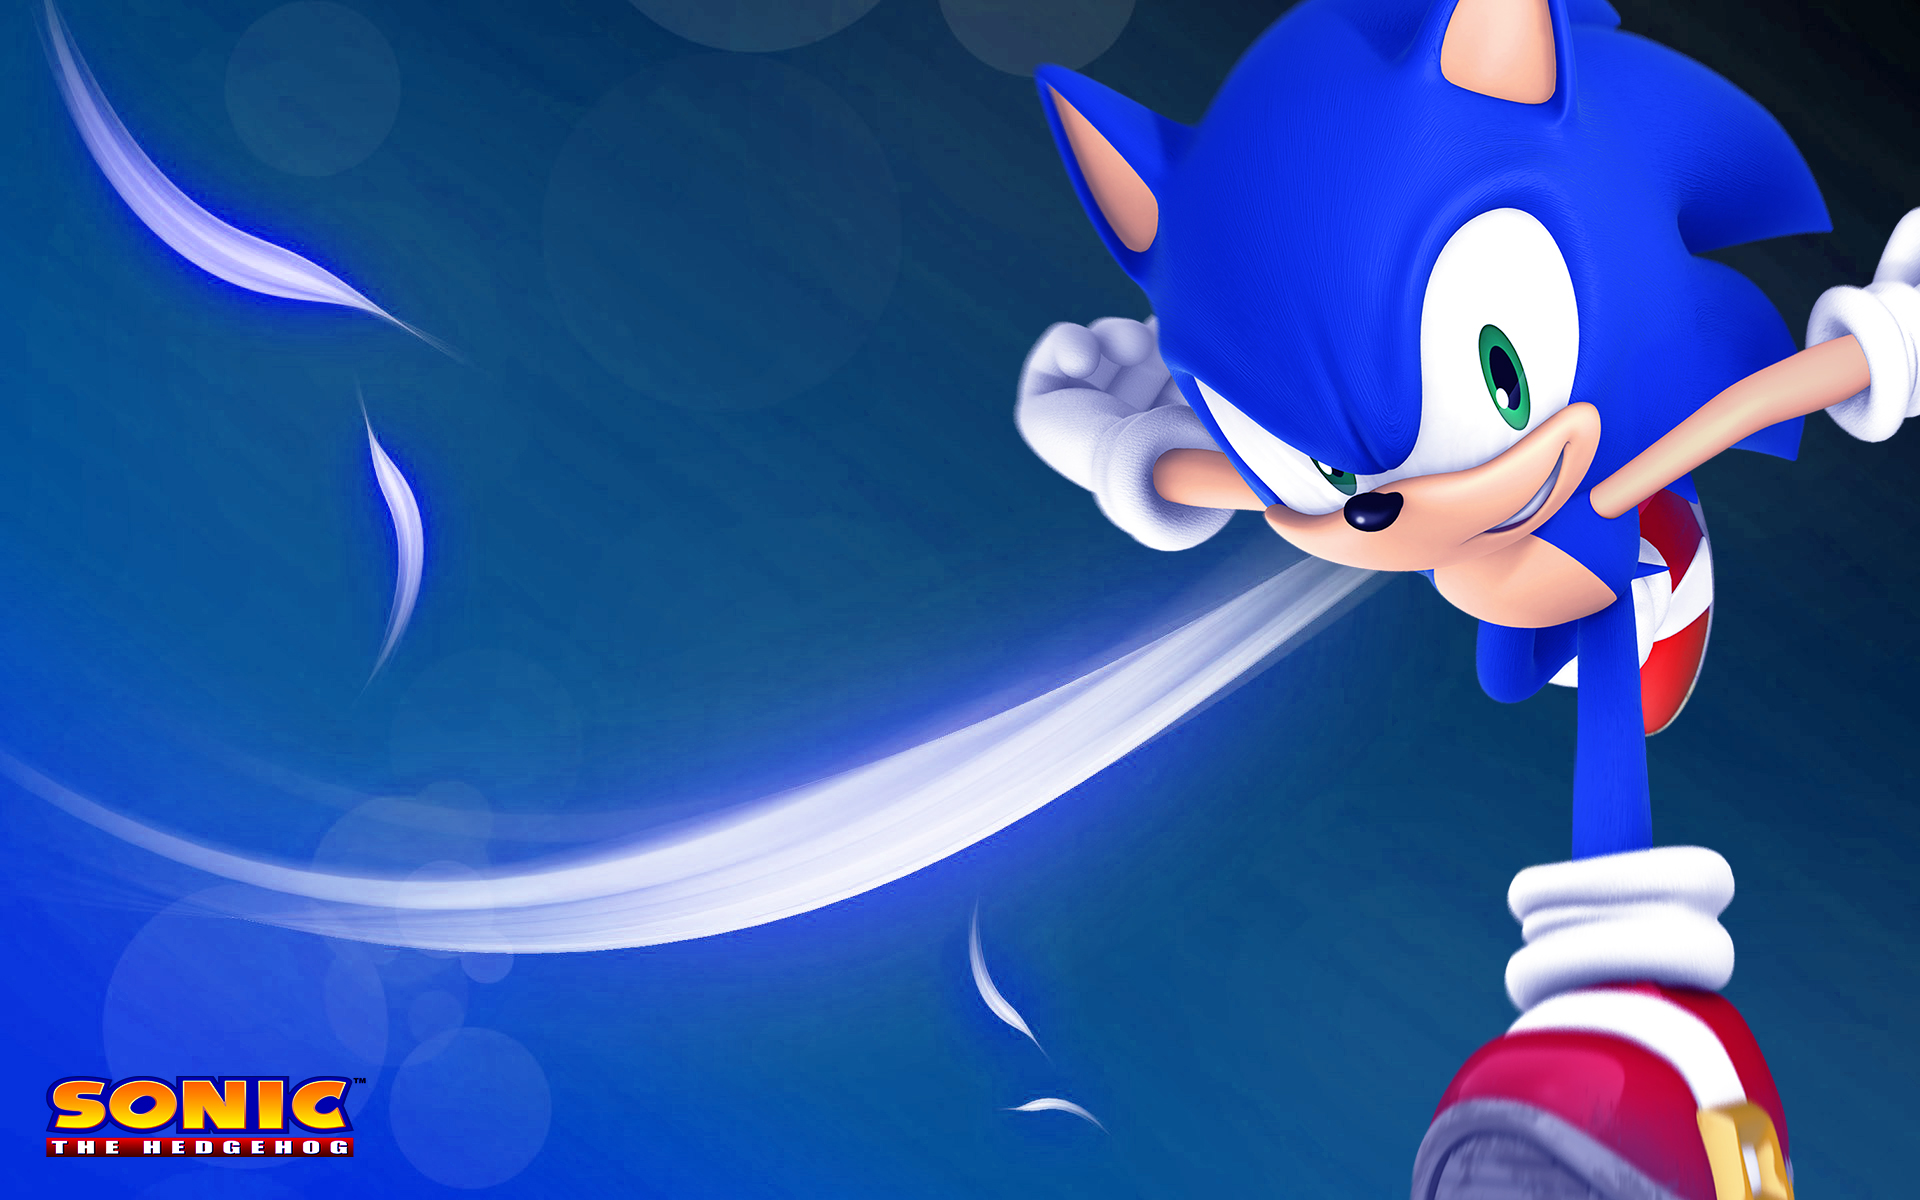 Cool Sonic The Hedgehog Desktop Wallpapers. 